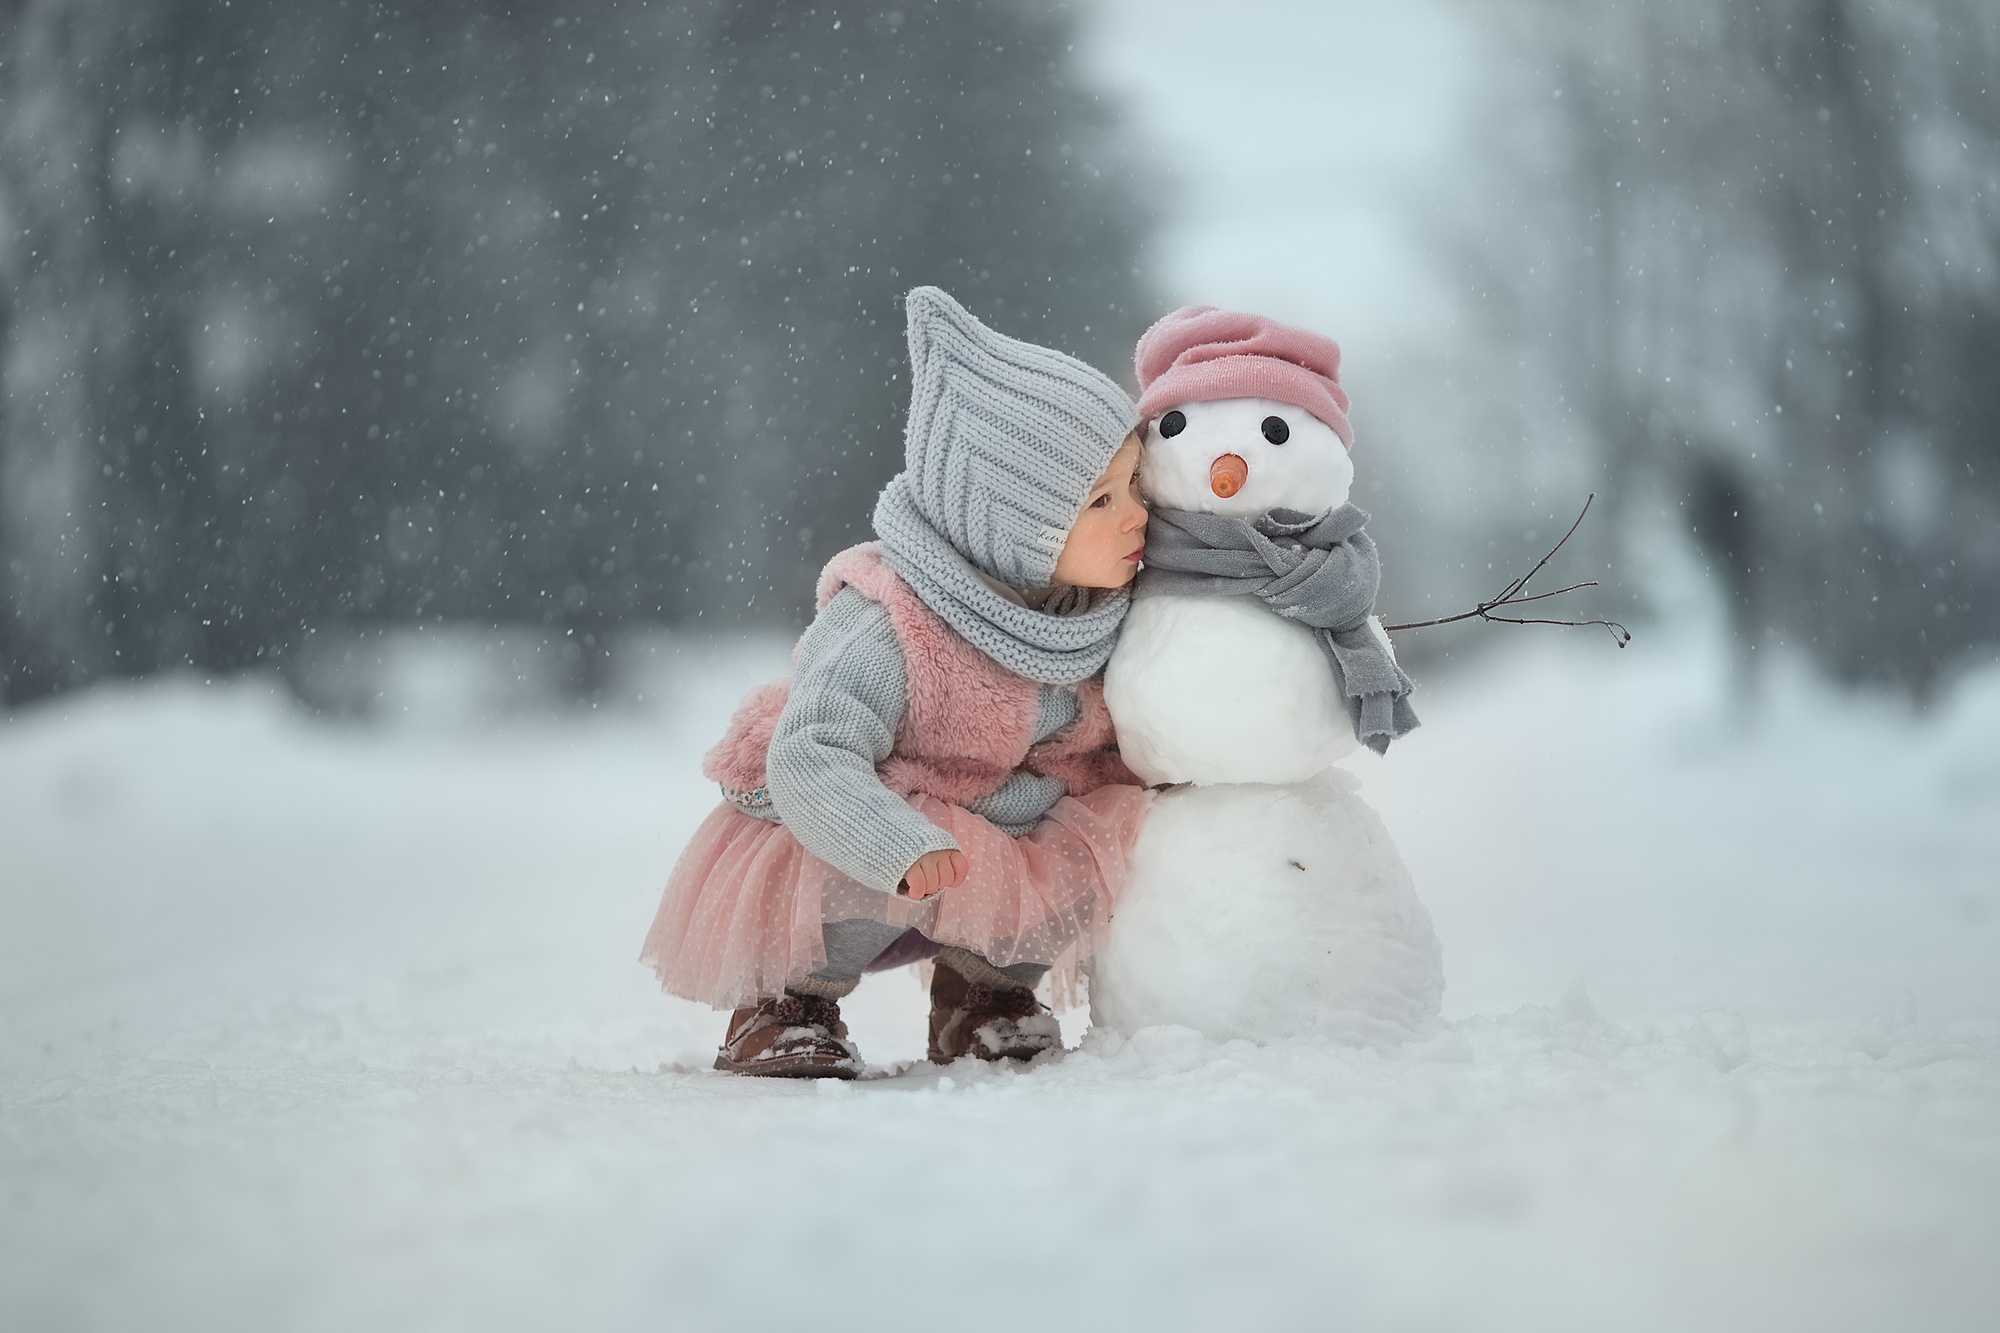 Скачать картинку Зима, Снег, Ребенок, Снеговик, Фотографии, Малышка в телефон бесплатно.